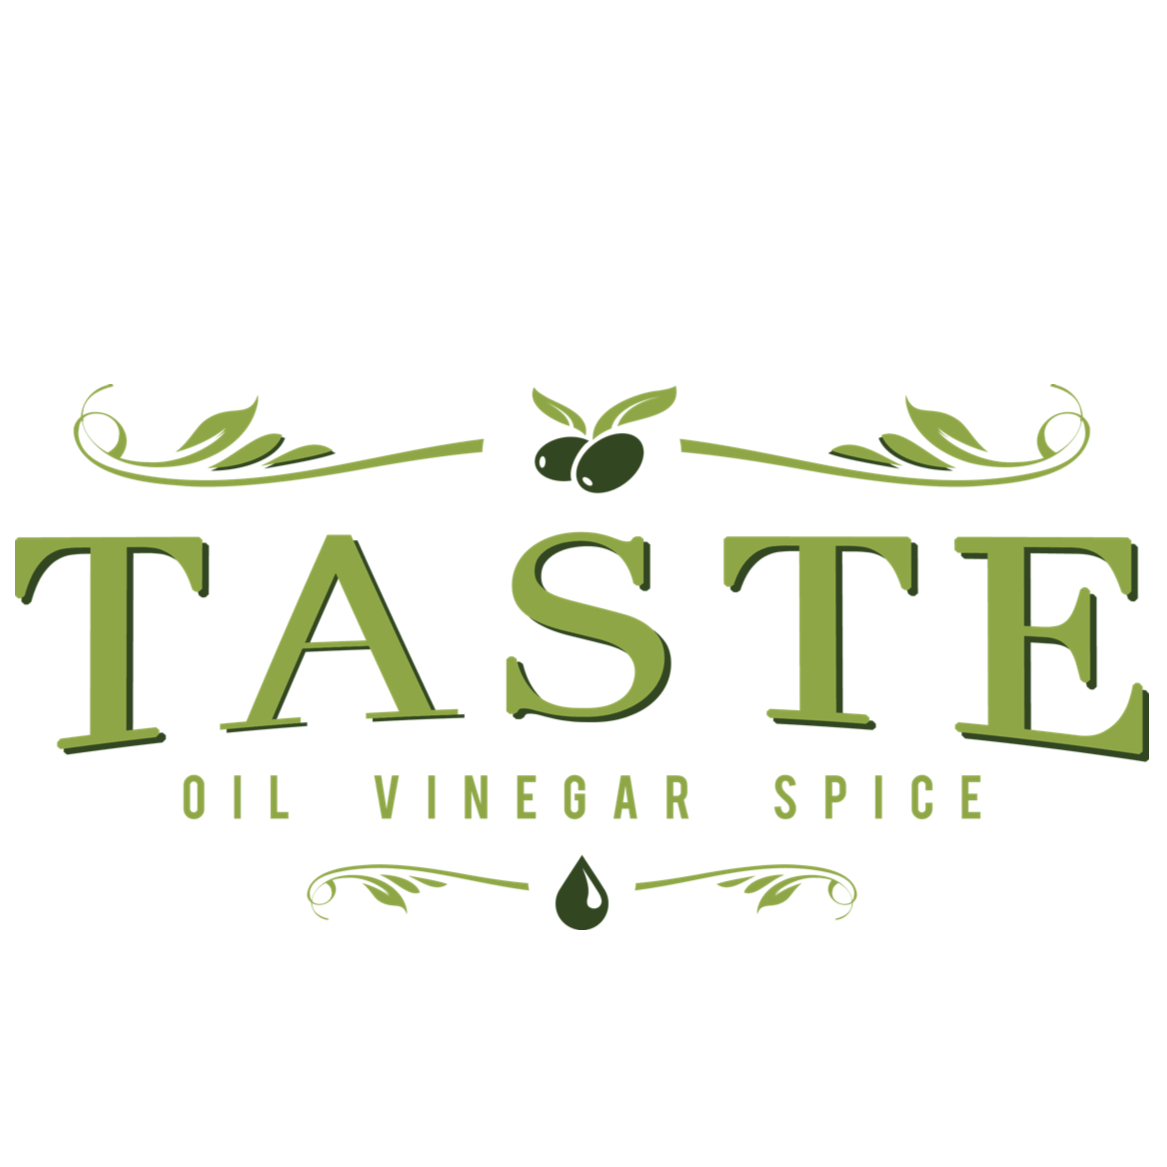 Taste, Oil, Vinegar, Spice Image